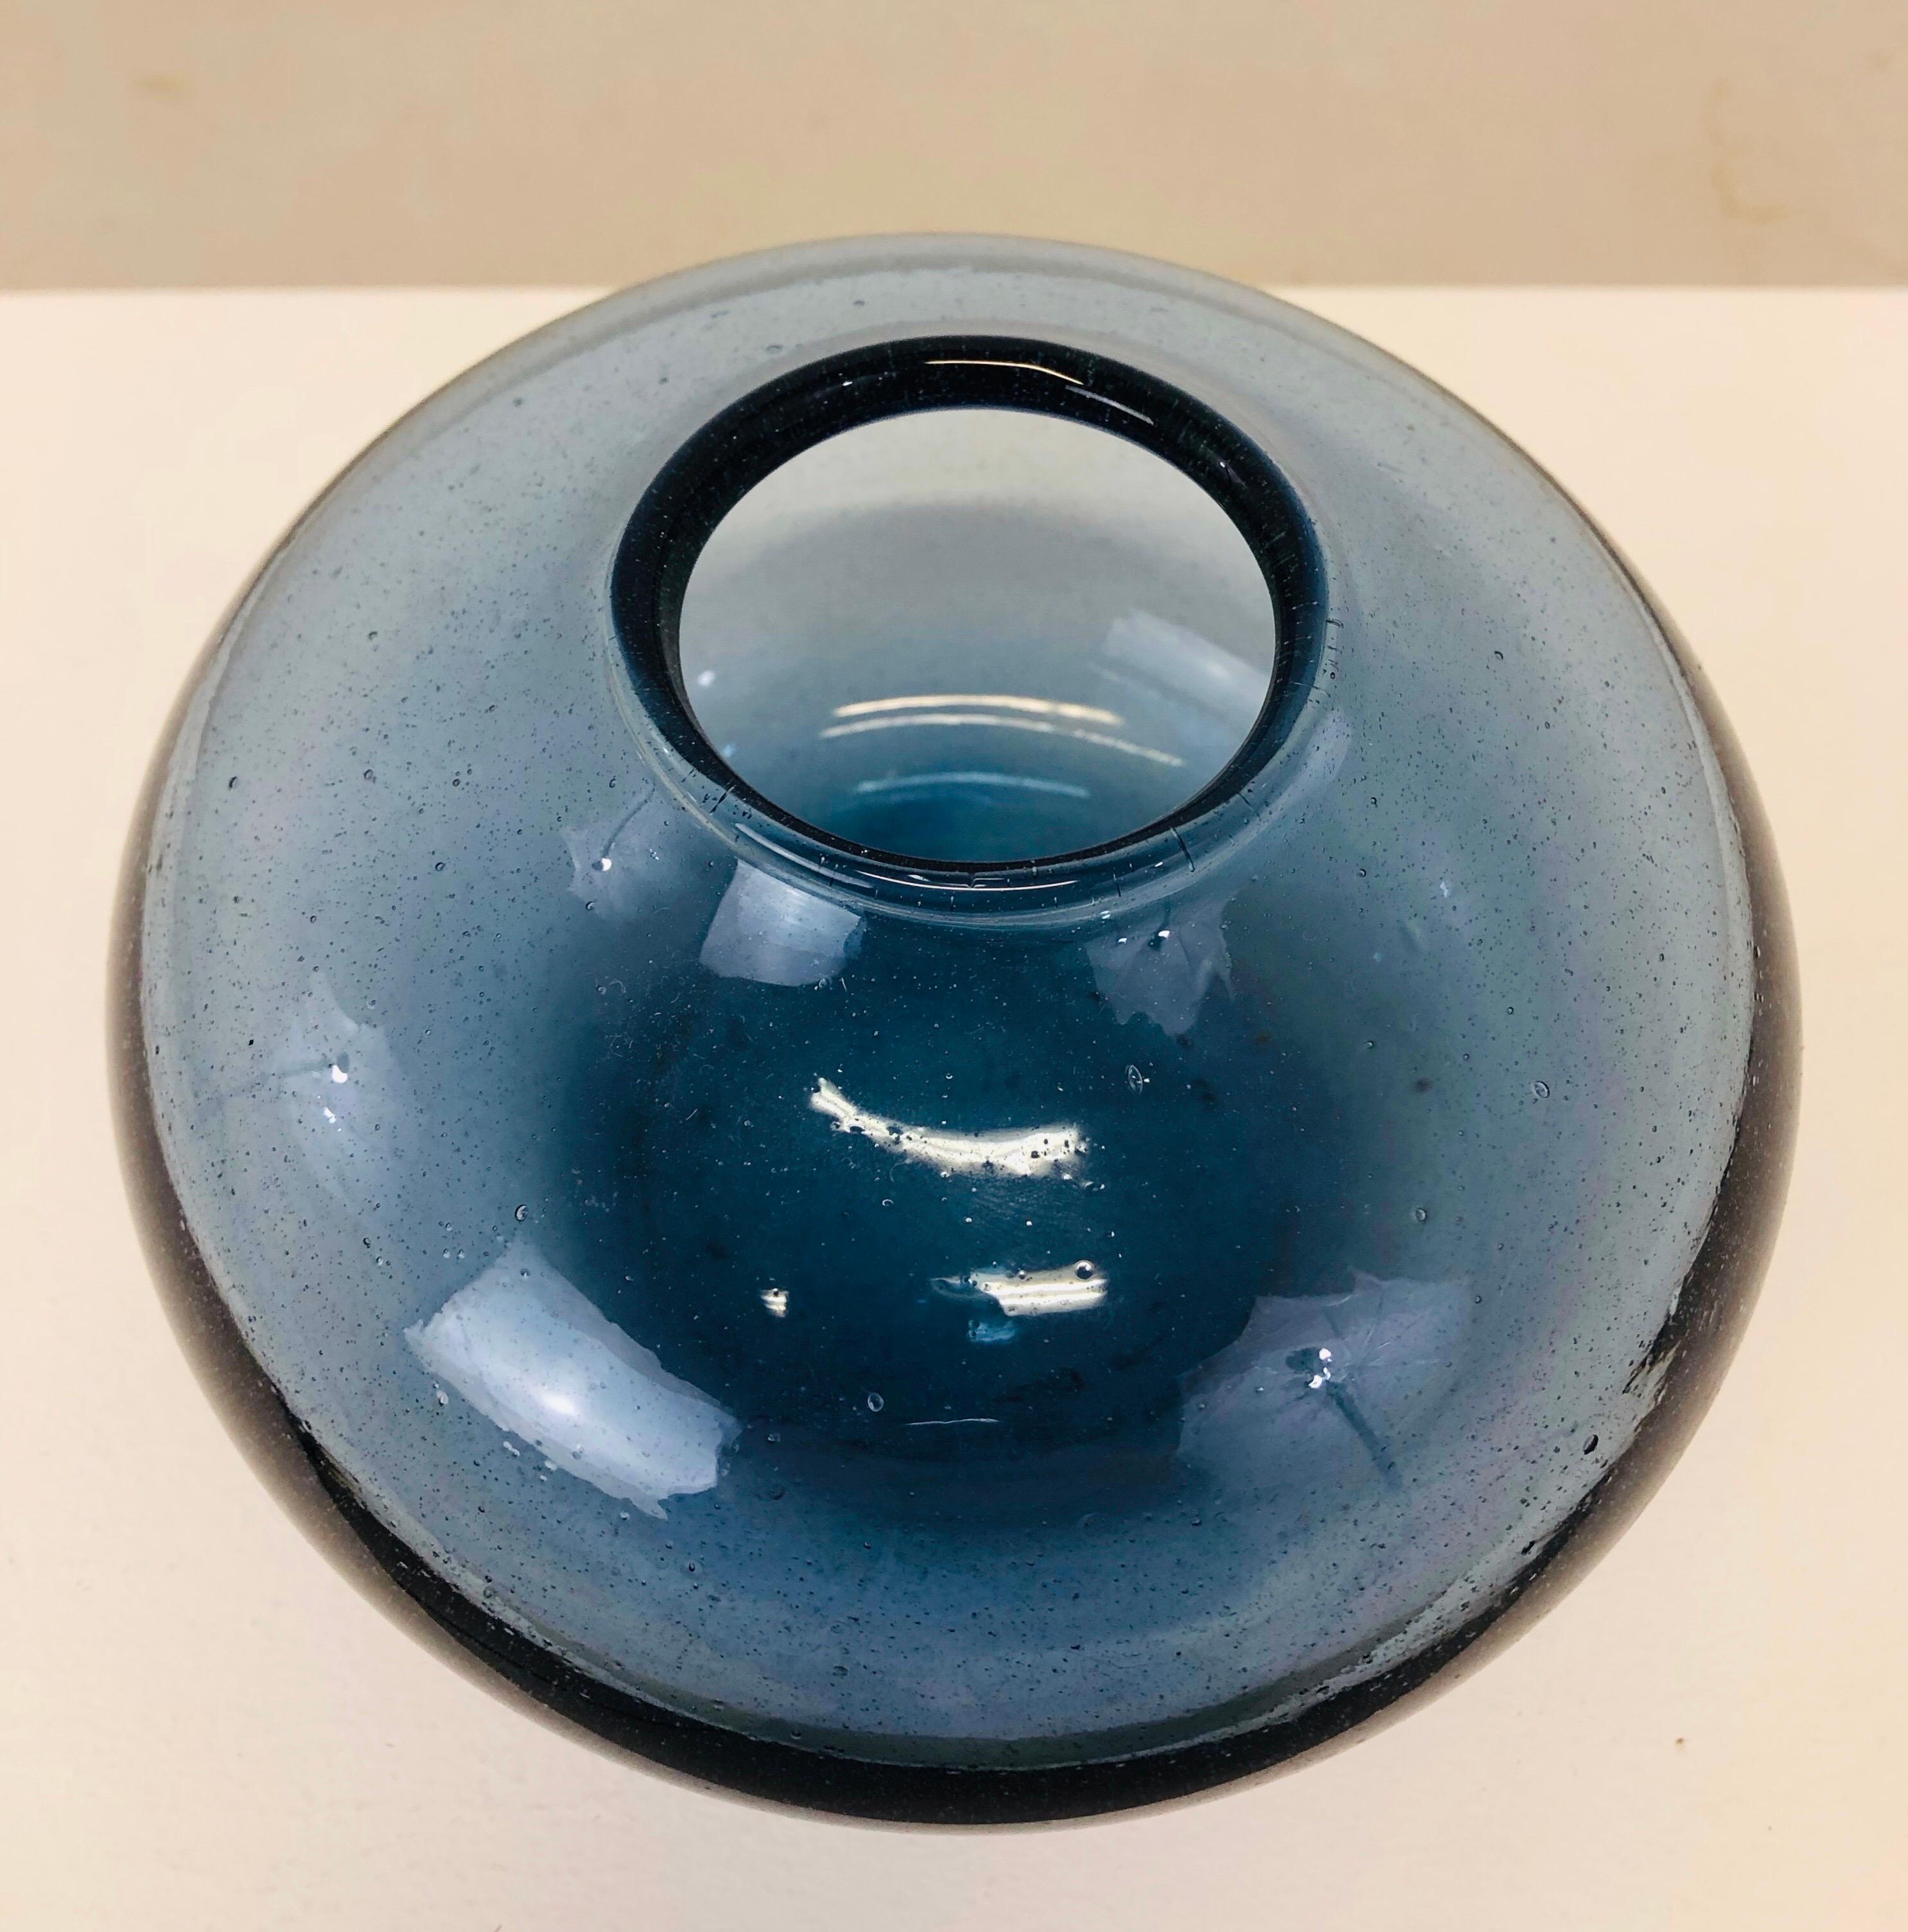 Claude Morin (1932-2021)

Un vase en verre bleu de l'artiste français Claude Morin

Signé au dos.
MORIN 
DIEULEFIT

Original en parfait état.